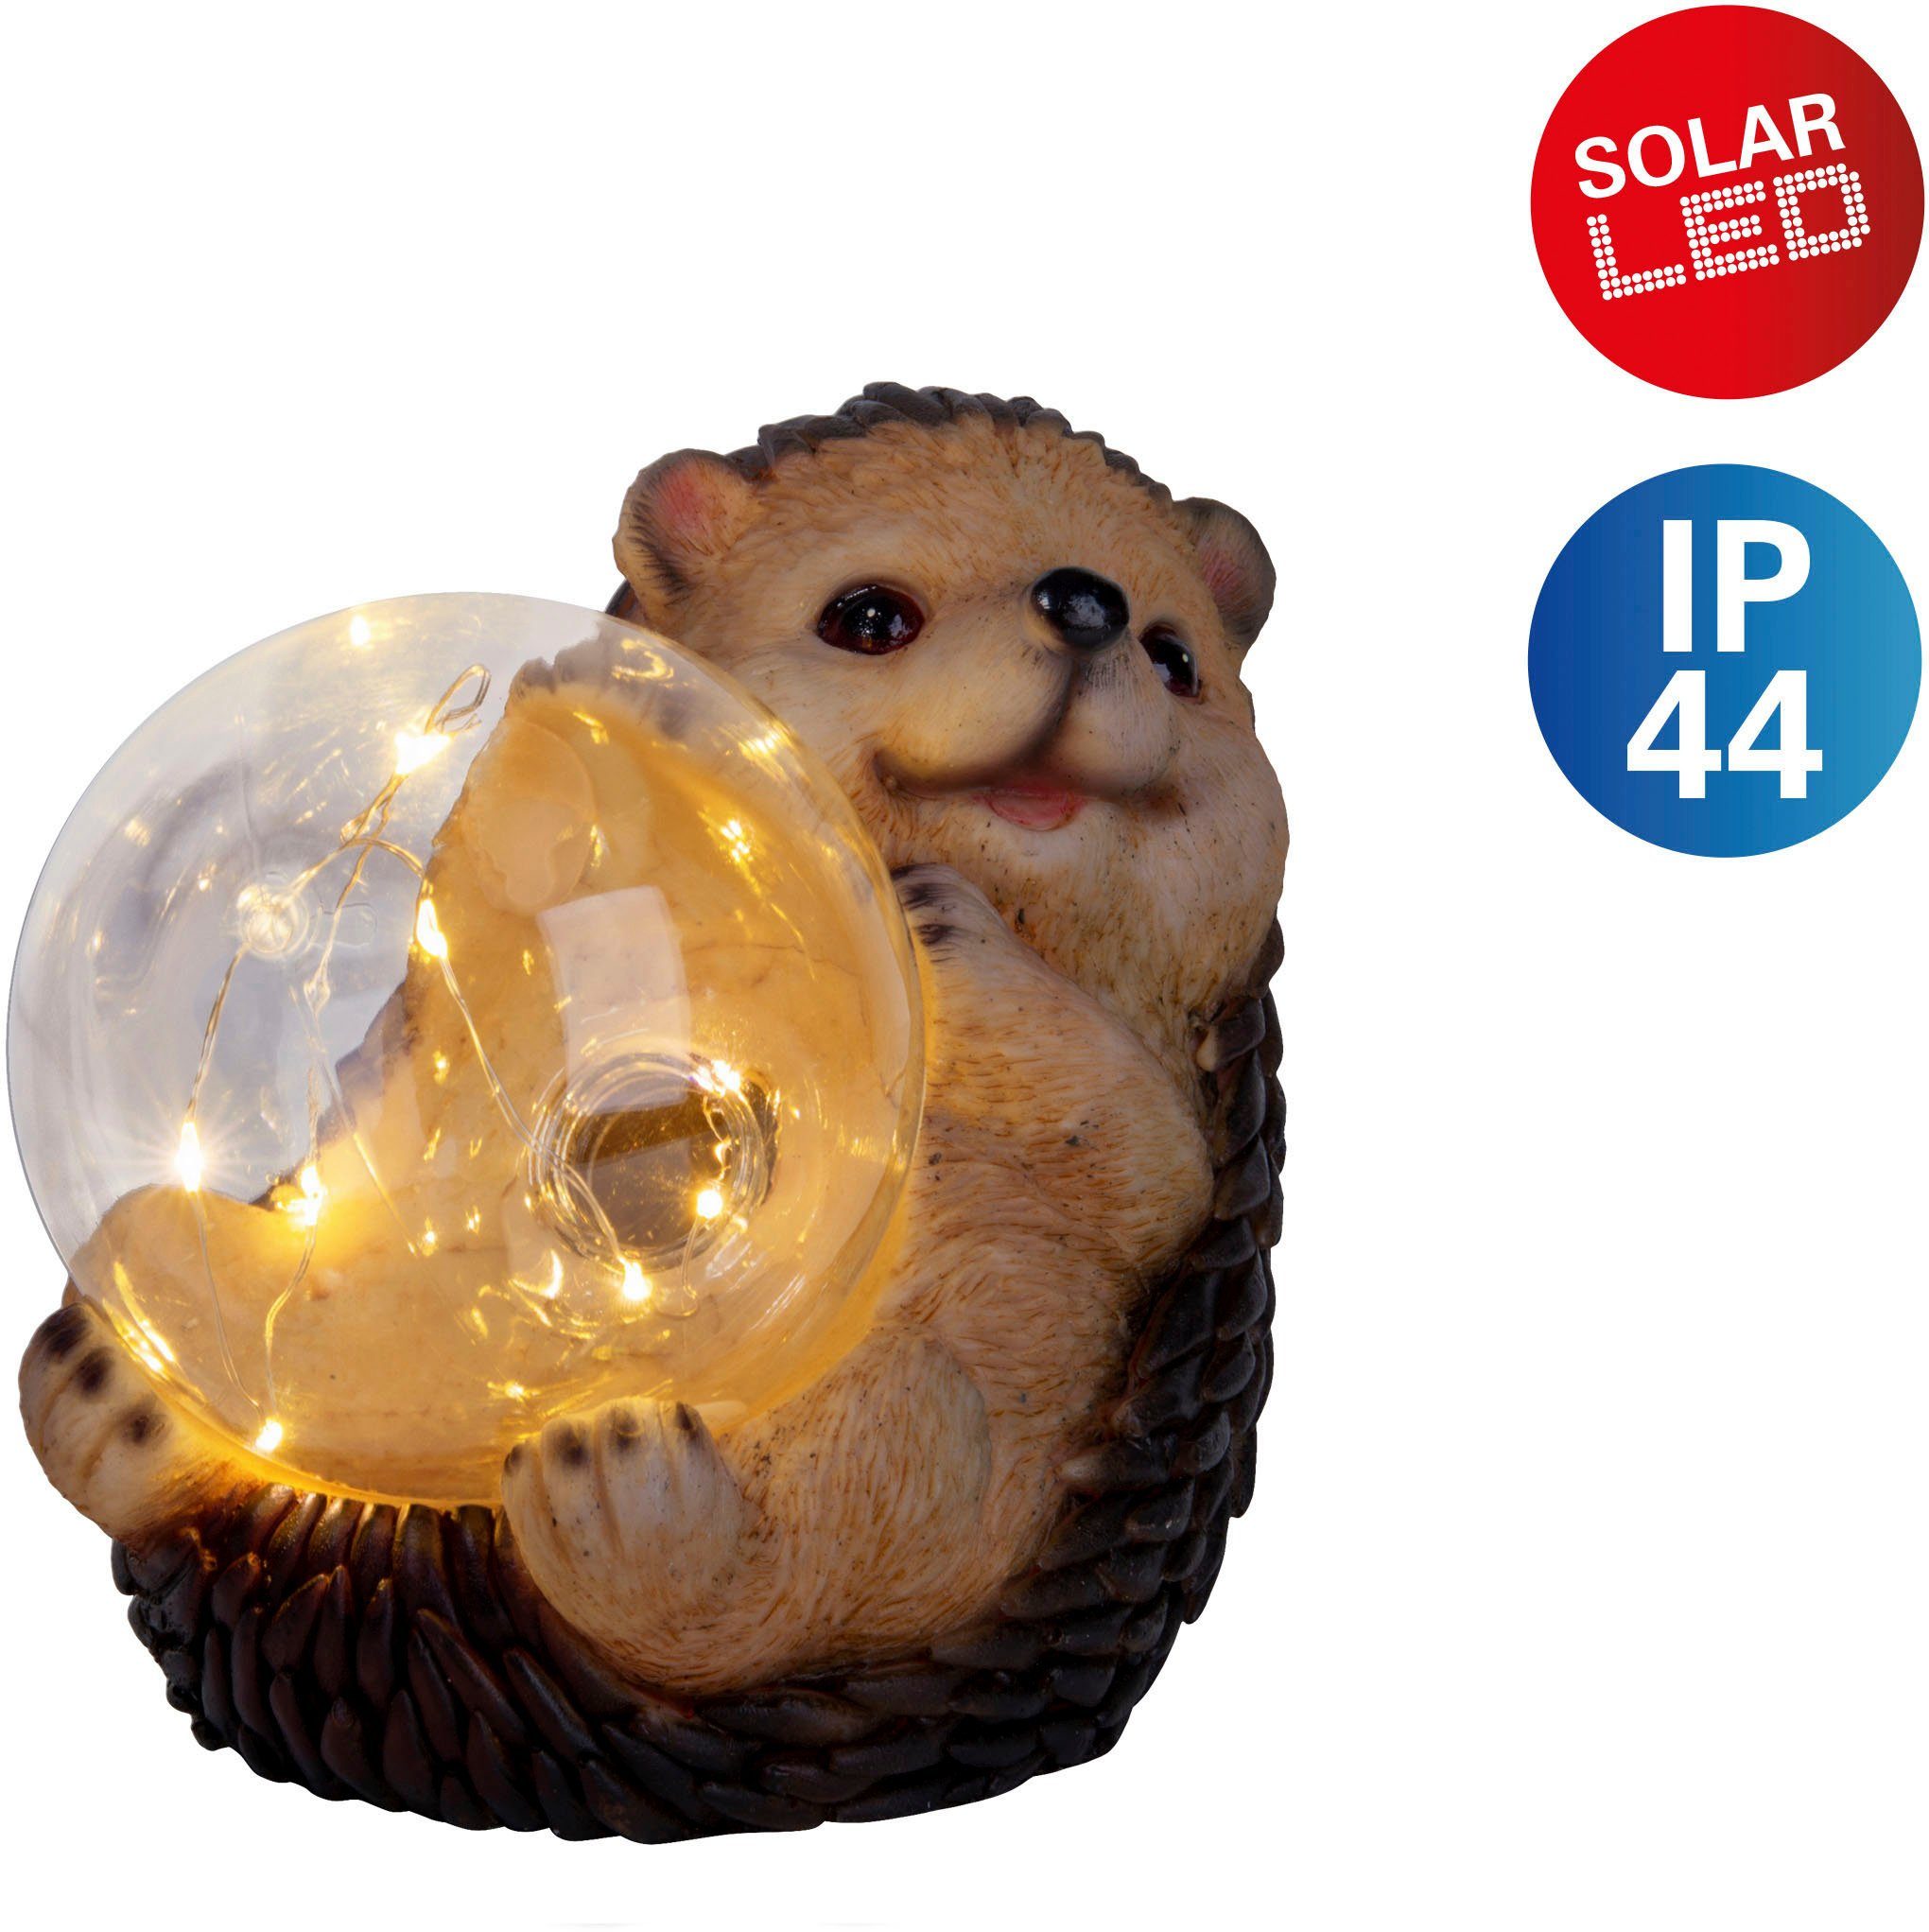 fest Licht LED Solarleuchte süßer LED mit Igel, Warmweiß, braun/beige, in warmweißes näve integriert, Kugel Igel beleuchteter